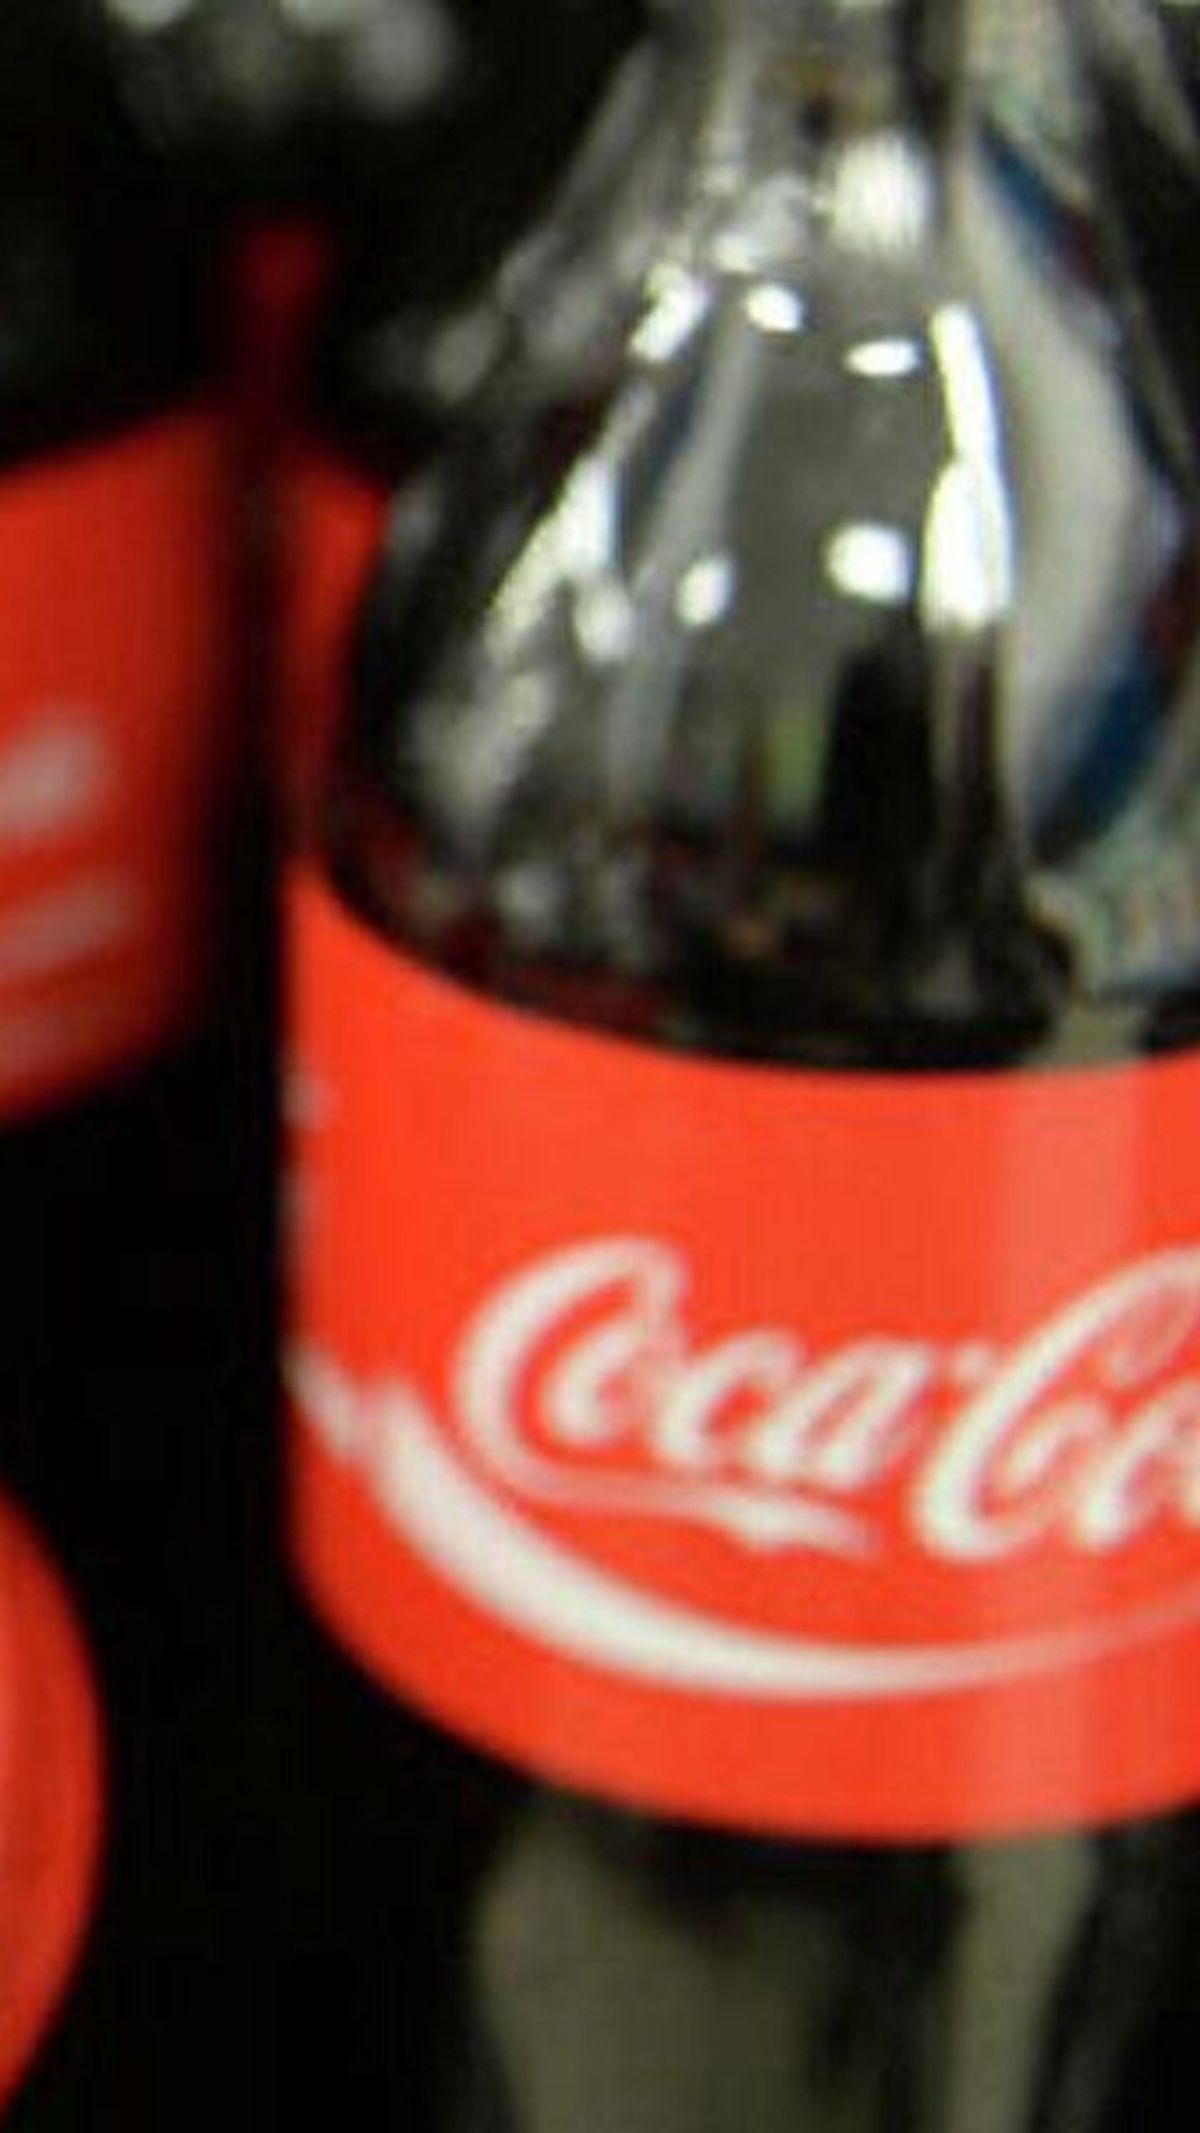 Detectan detergentes en una muestra analizada de Coca-Cola tras casos de intoxicación